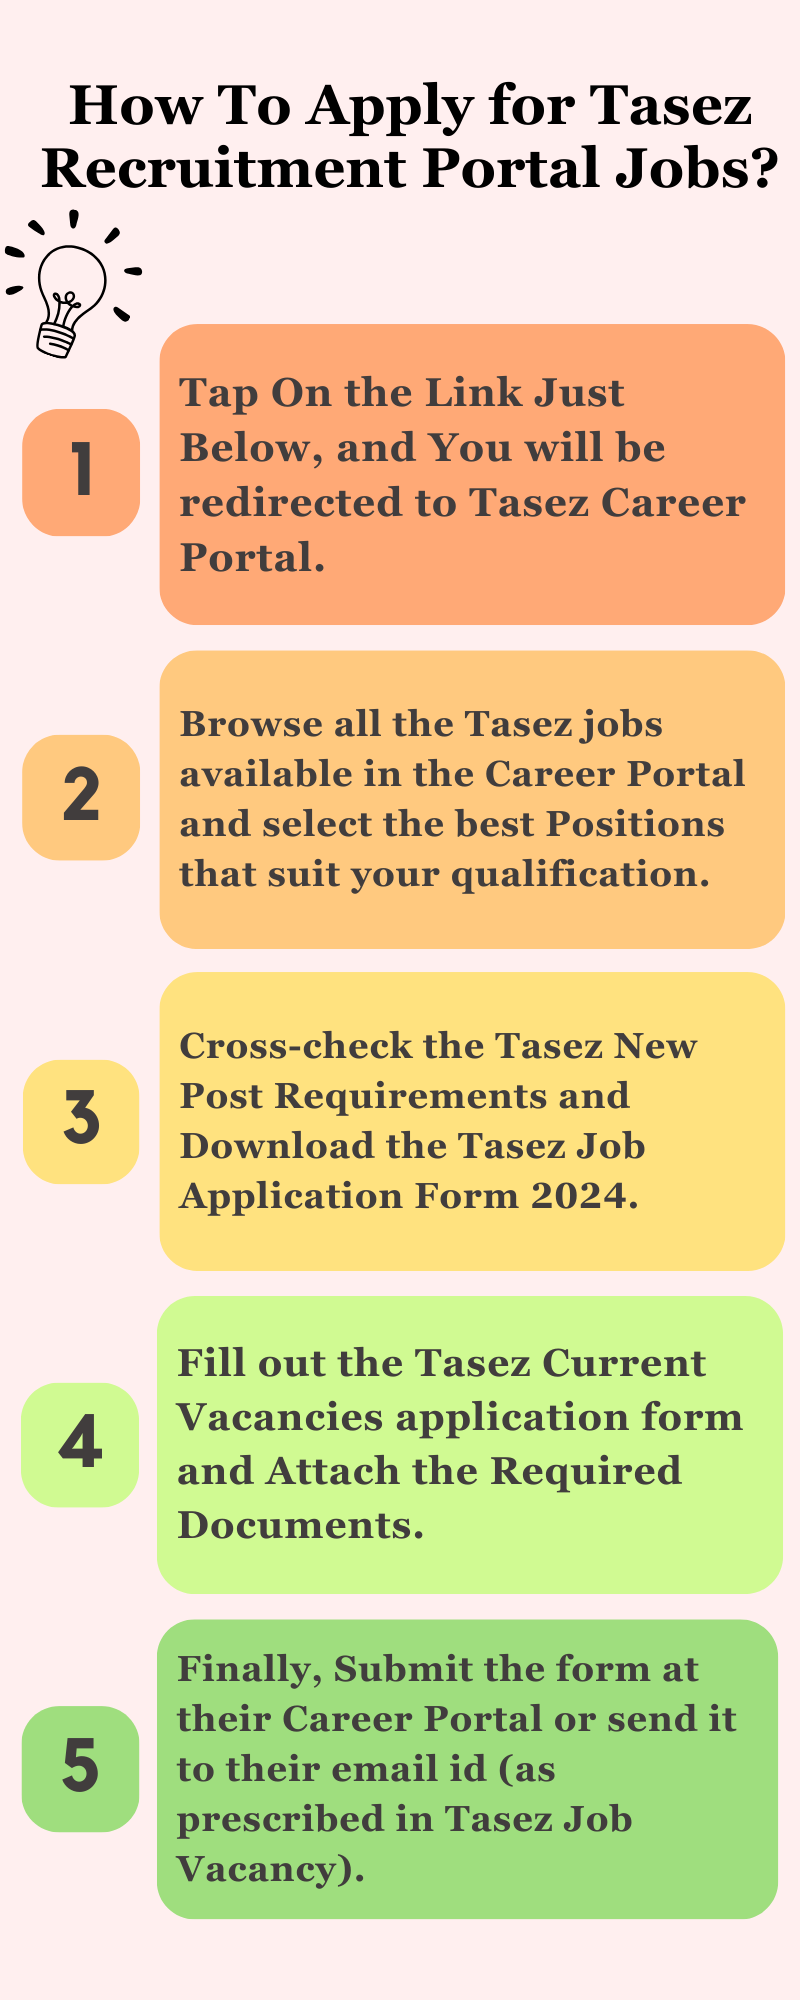 How To Apply for Tasez Recruitment Portal Jobs?